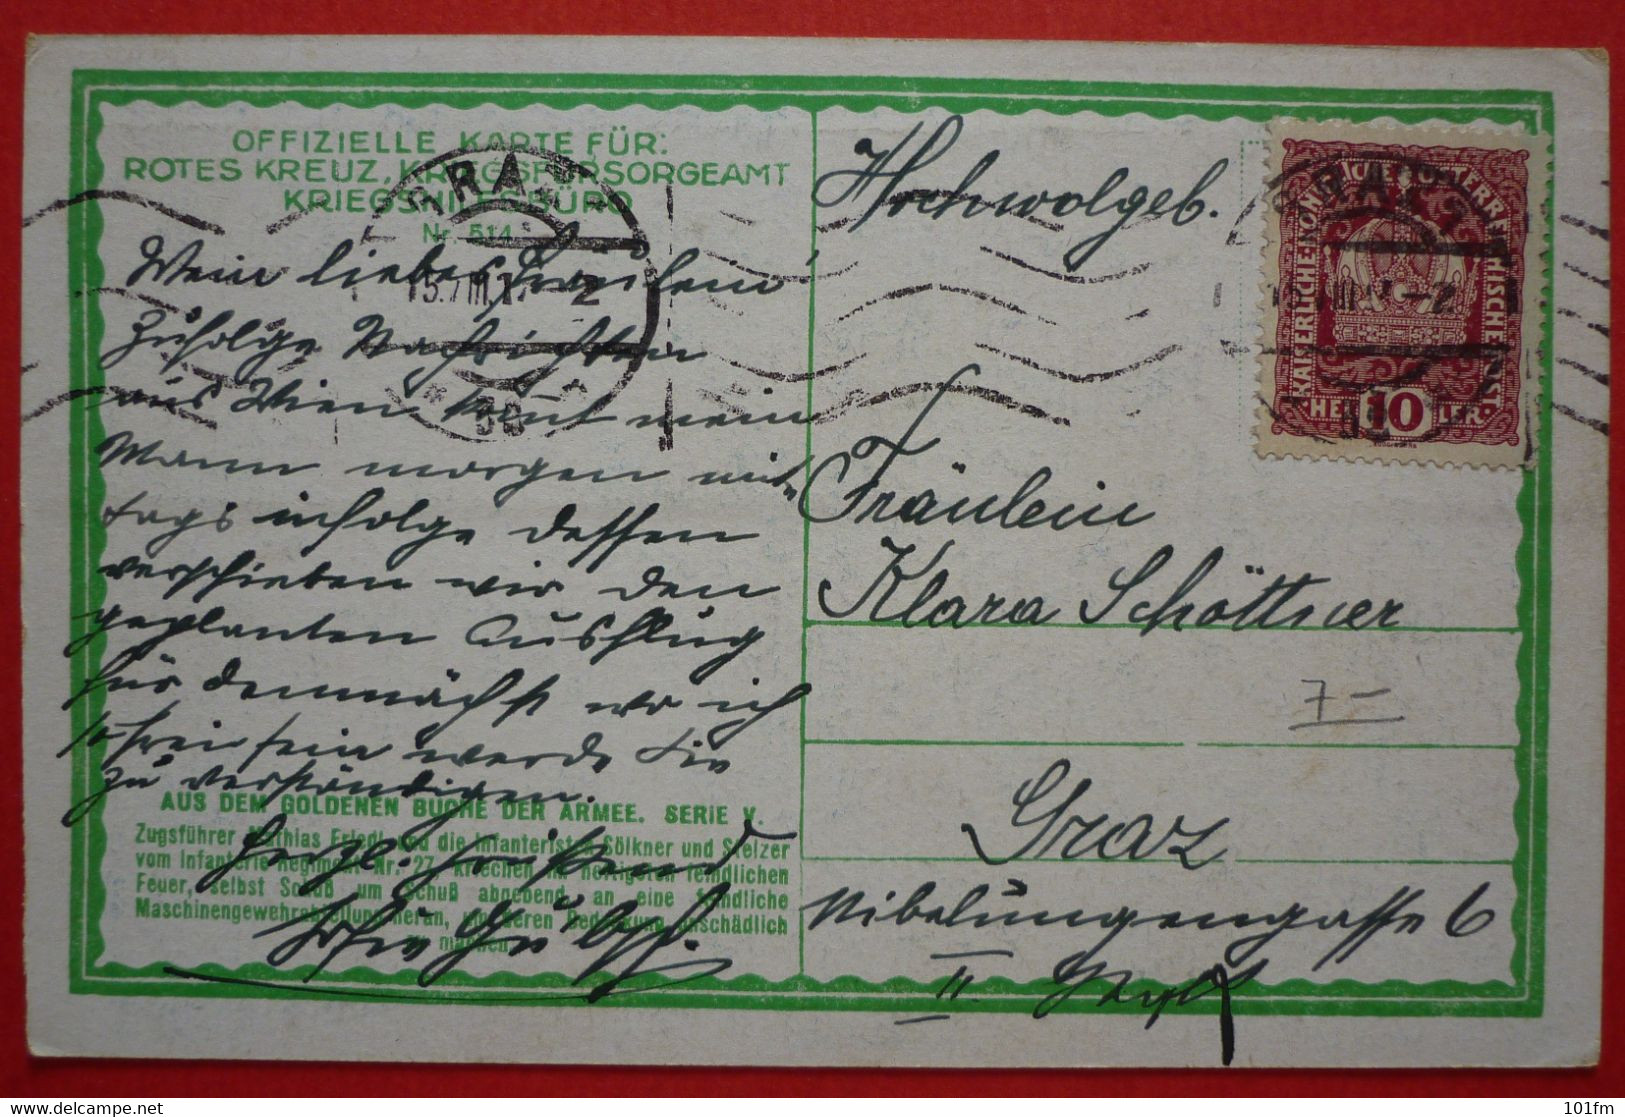 K.u.K. Soldaten, WWI - Offizielle Karte Fur Rotes Kreuz Nr. 514 - Weltkrieg 1914-18